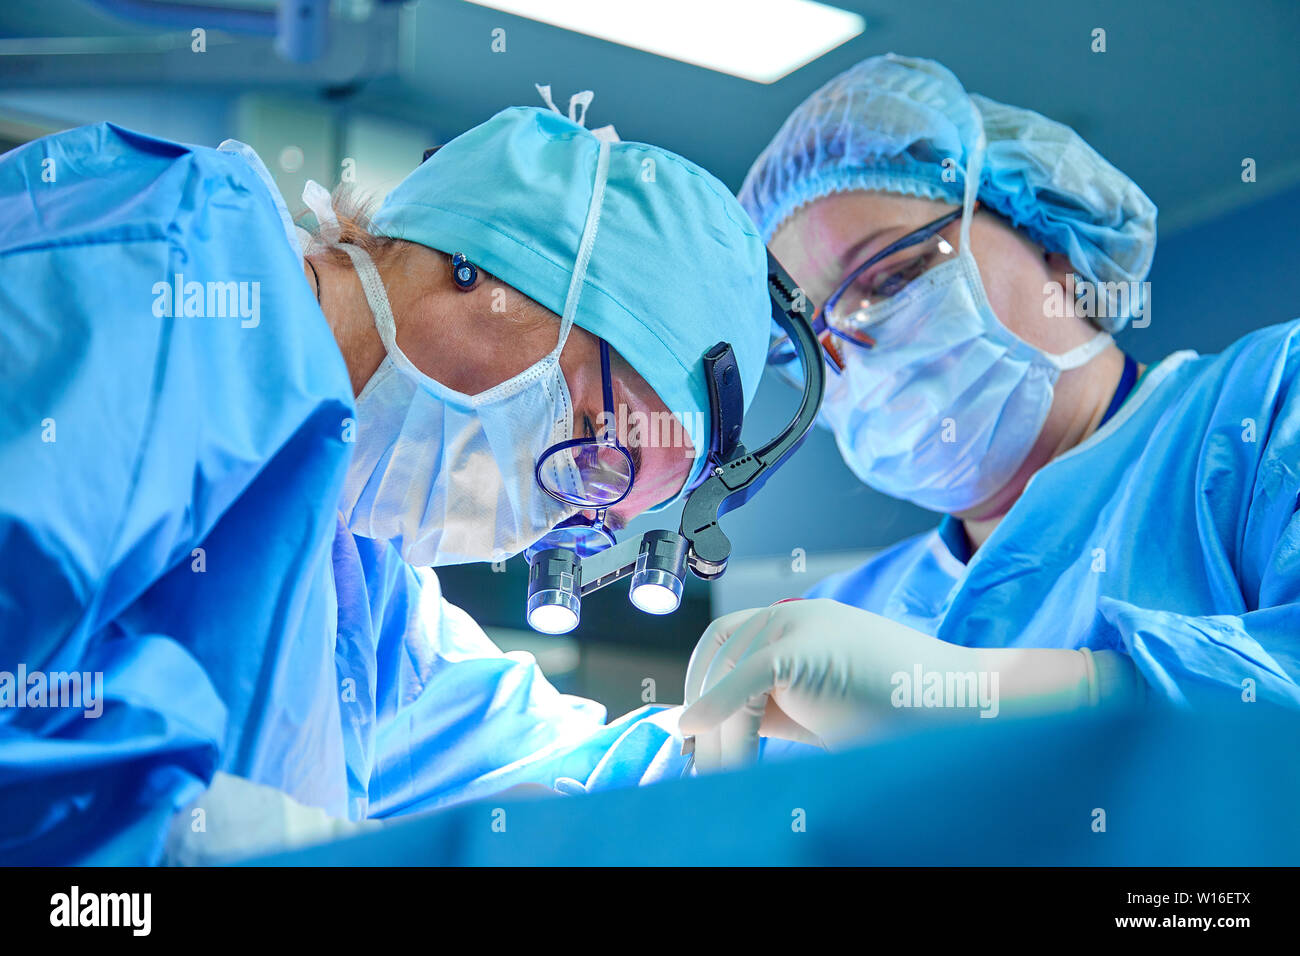 Un equipo del cirujano en uniforme realiza una operación en un paciente en una clínica de cirugía cardiaca. La medicina moderna, un equipo profesional de cirujanos, la salud. Foto de stock